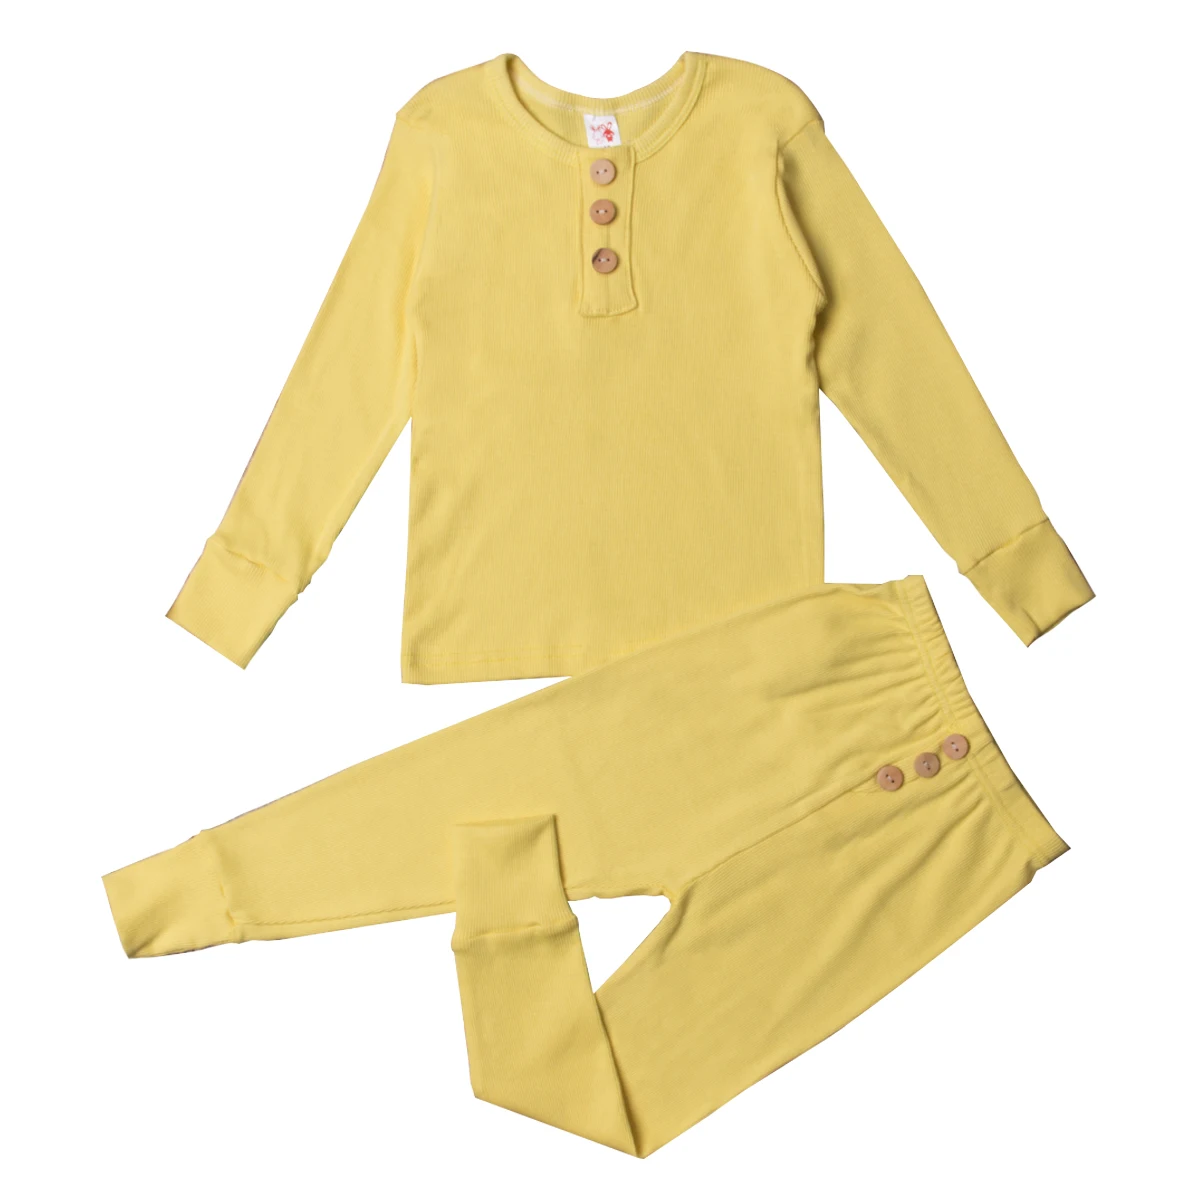 Детские пижамы; детская одежда для сна; комплекты пижам для малышей; пижамы сплошного цвета с кнопками для мальчиков и девочек; пижамы; одежда для сна; одежда для детей